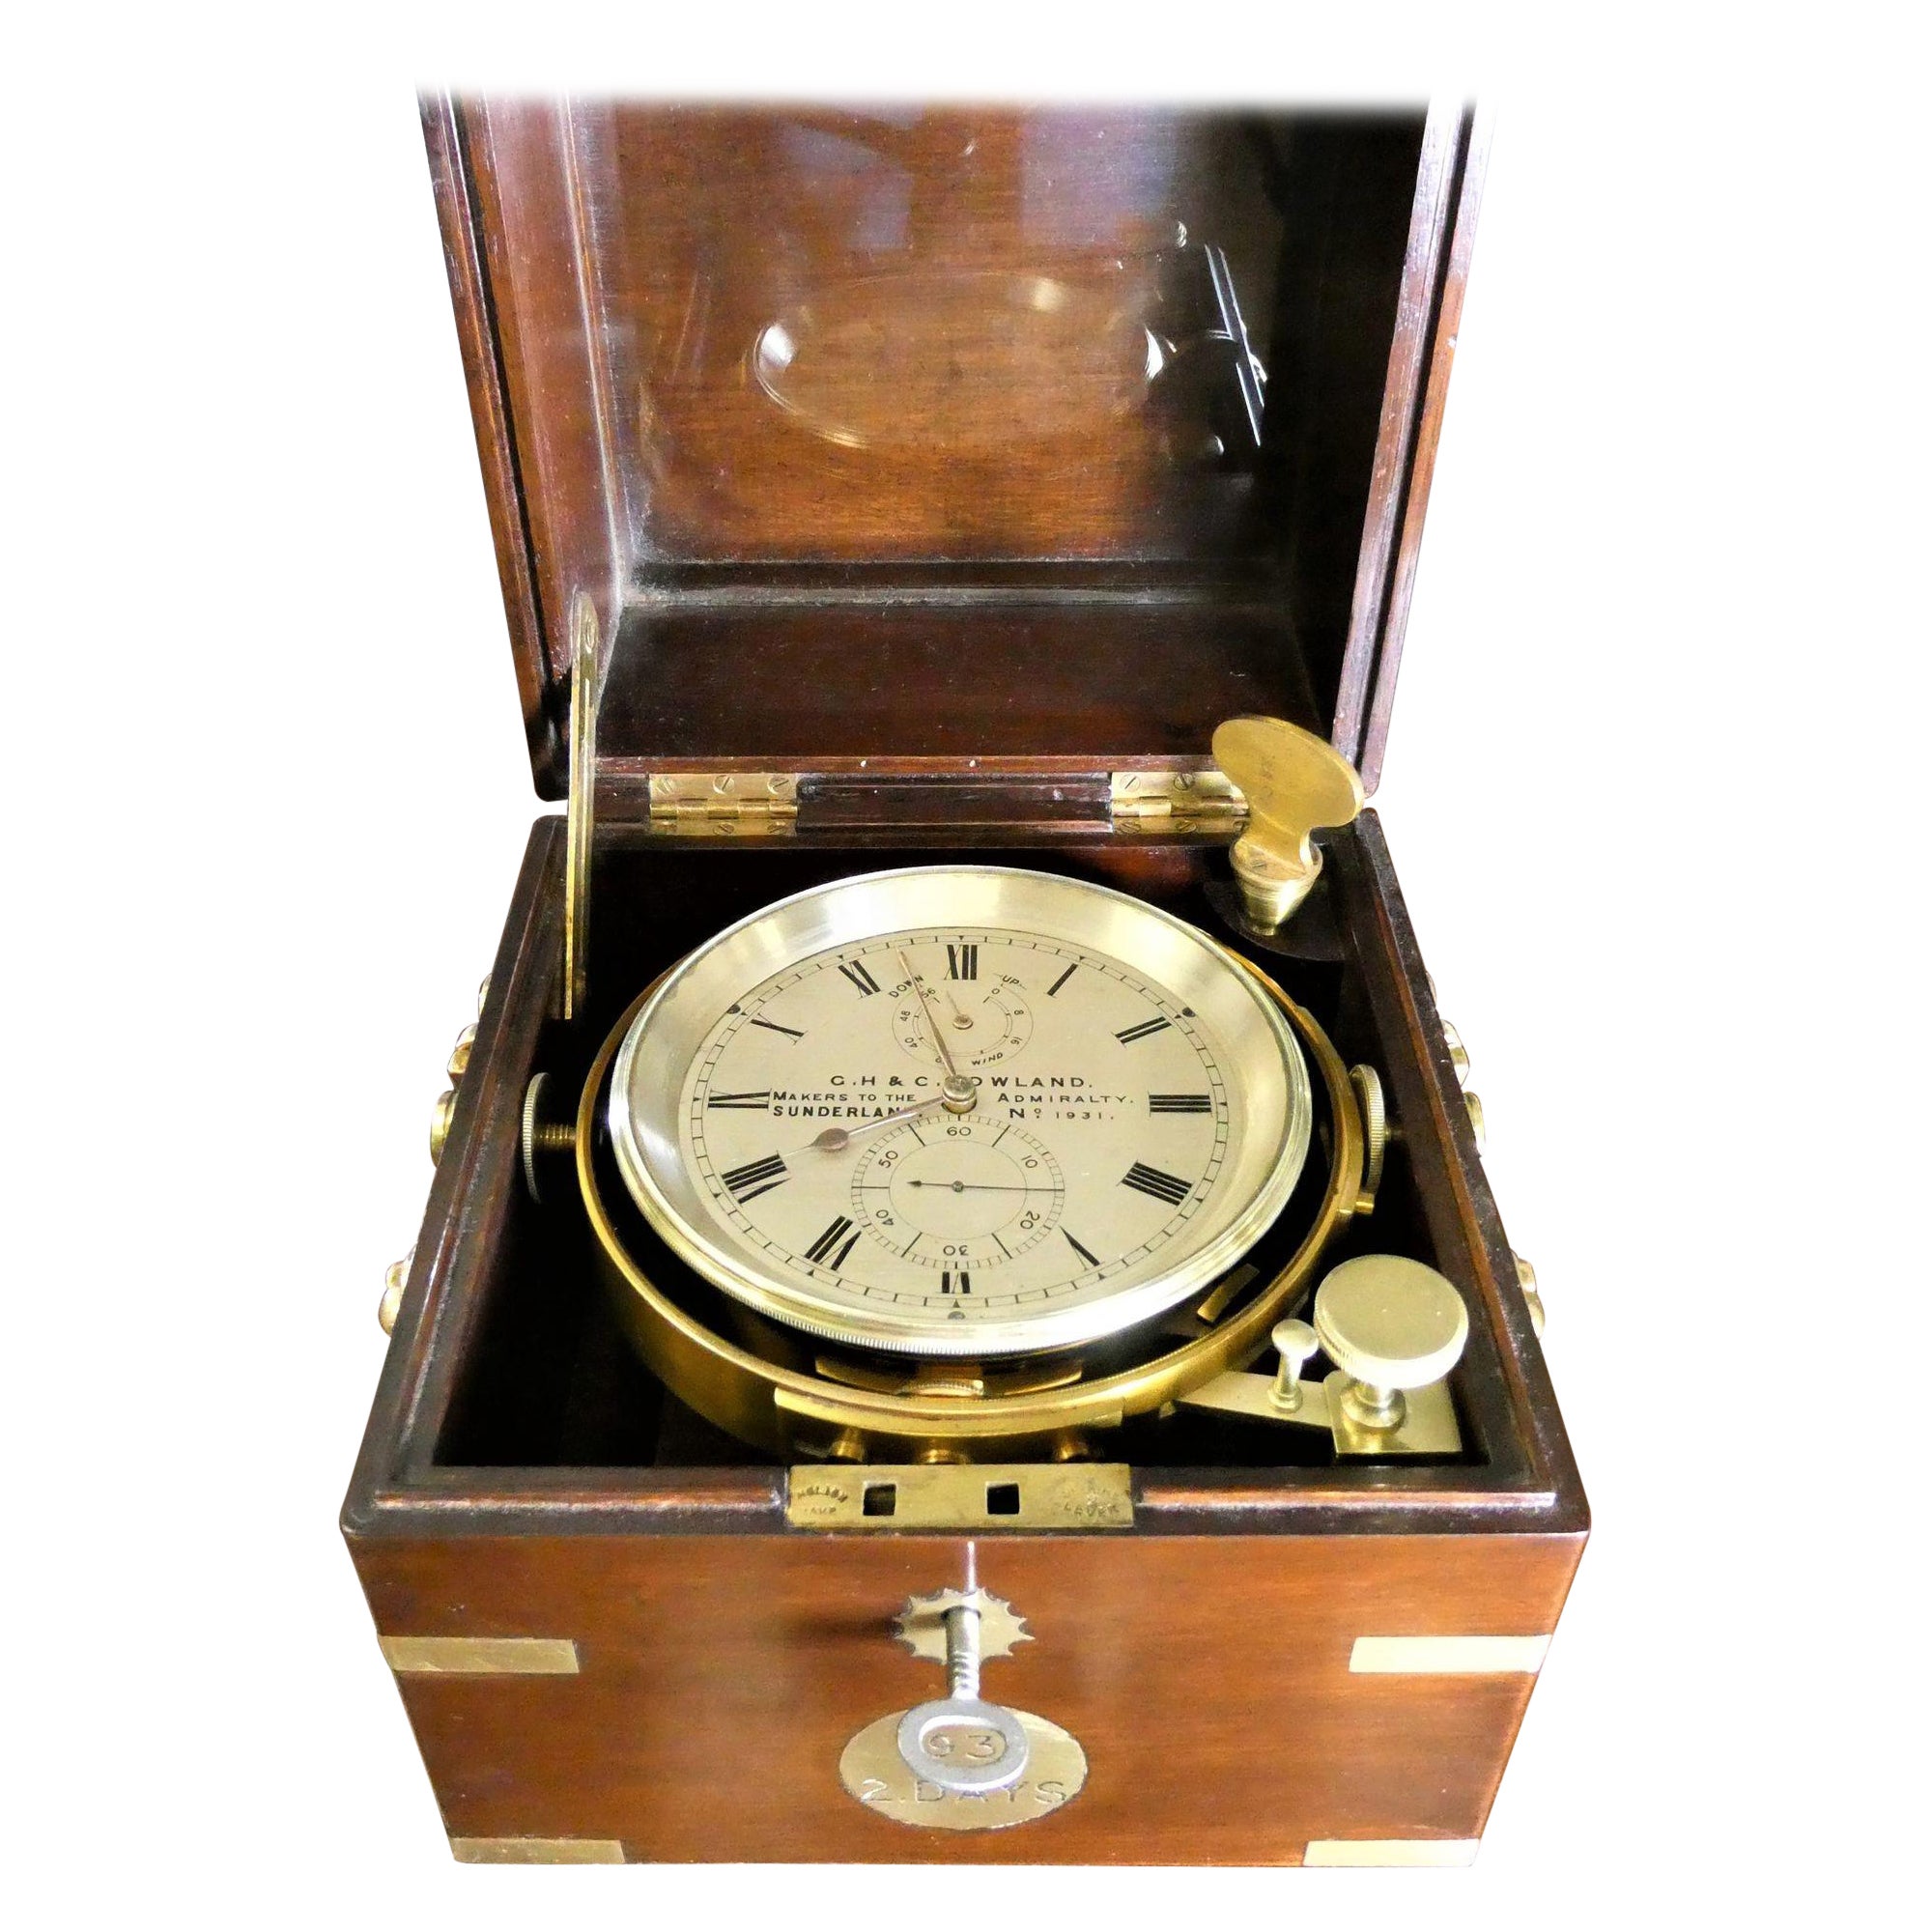 Chronomètre de la marine deux jours, G.H & C Gowland, Sunderland n°1931